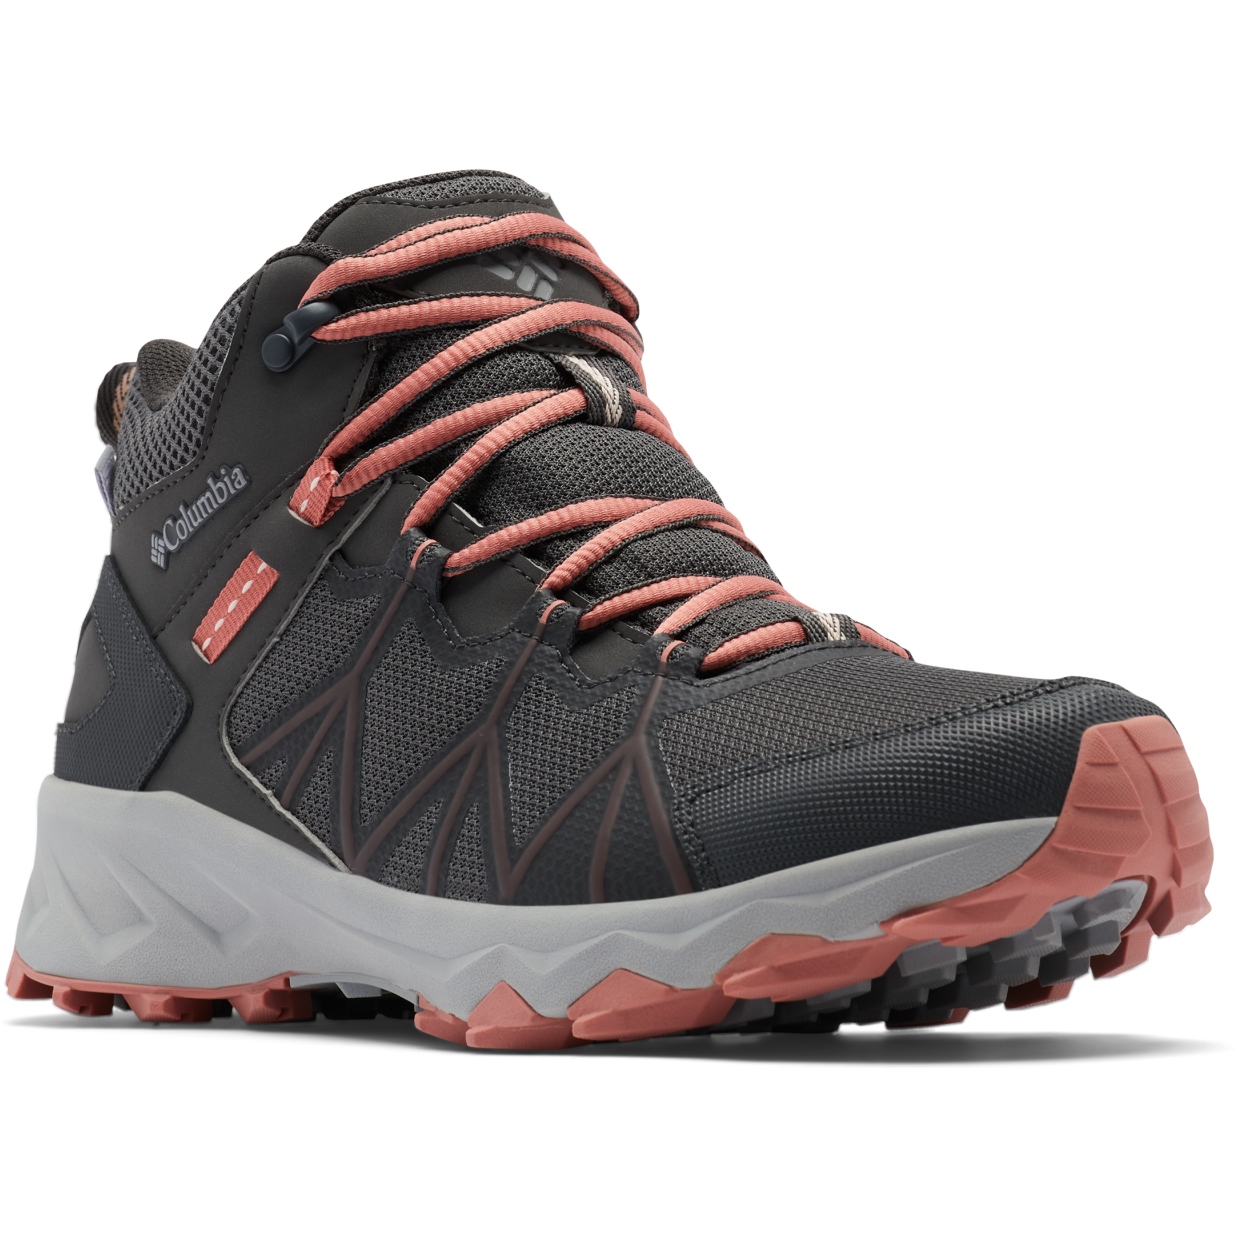 Image of Columbia Peakfreak II Mid Outdry Hiking Shoes Women - Dark Grey/Dark Coral